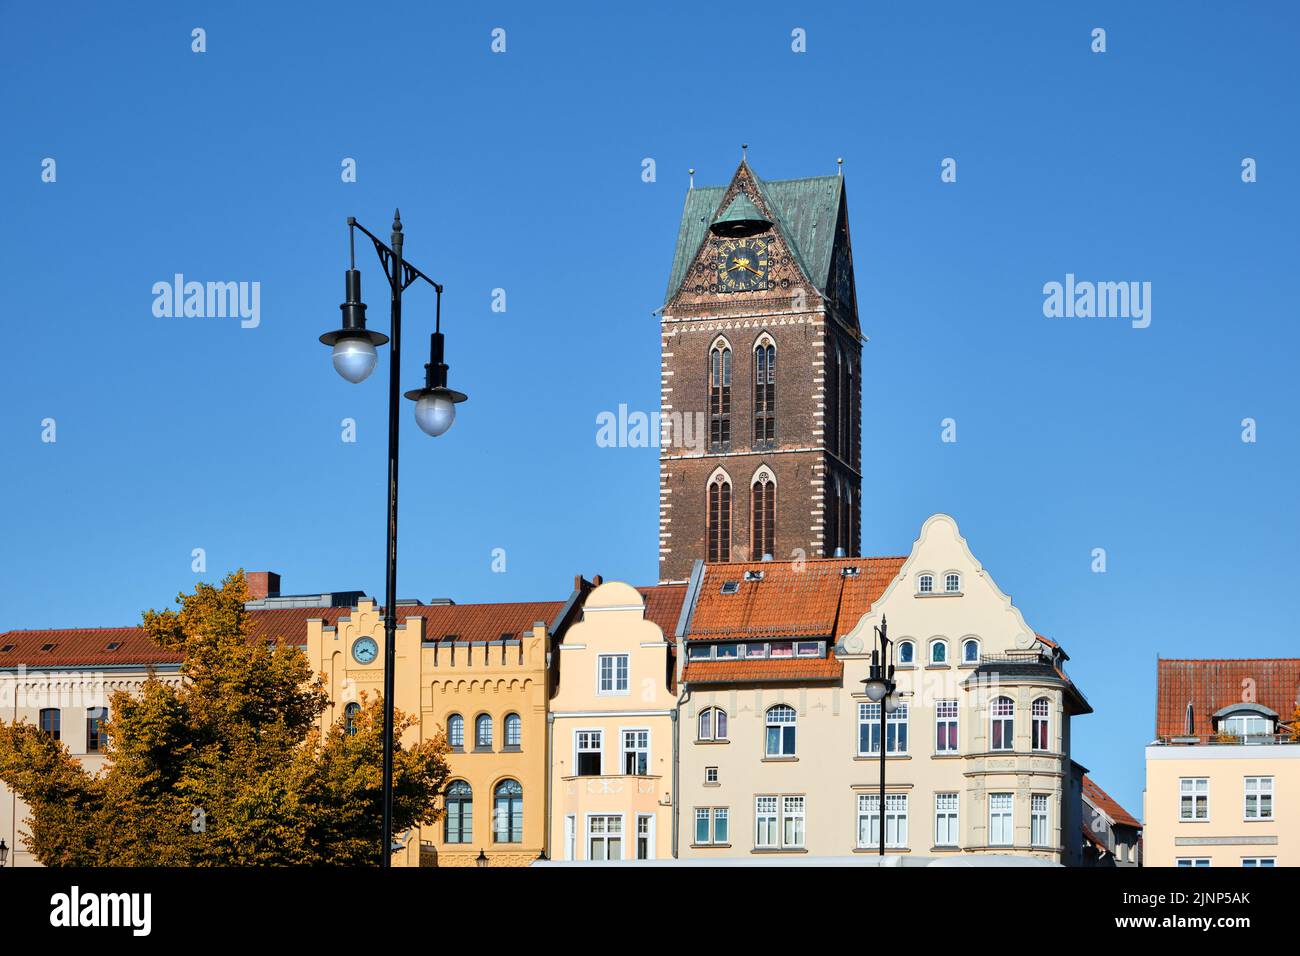 Antigua torre del reloj de la iglesia Marienkirche y edificios históricos en el centro de Wismar, Alemania Foto de stock